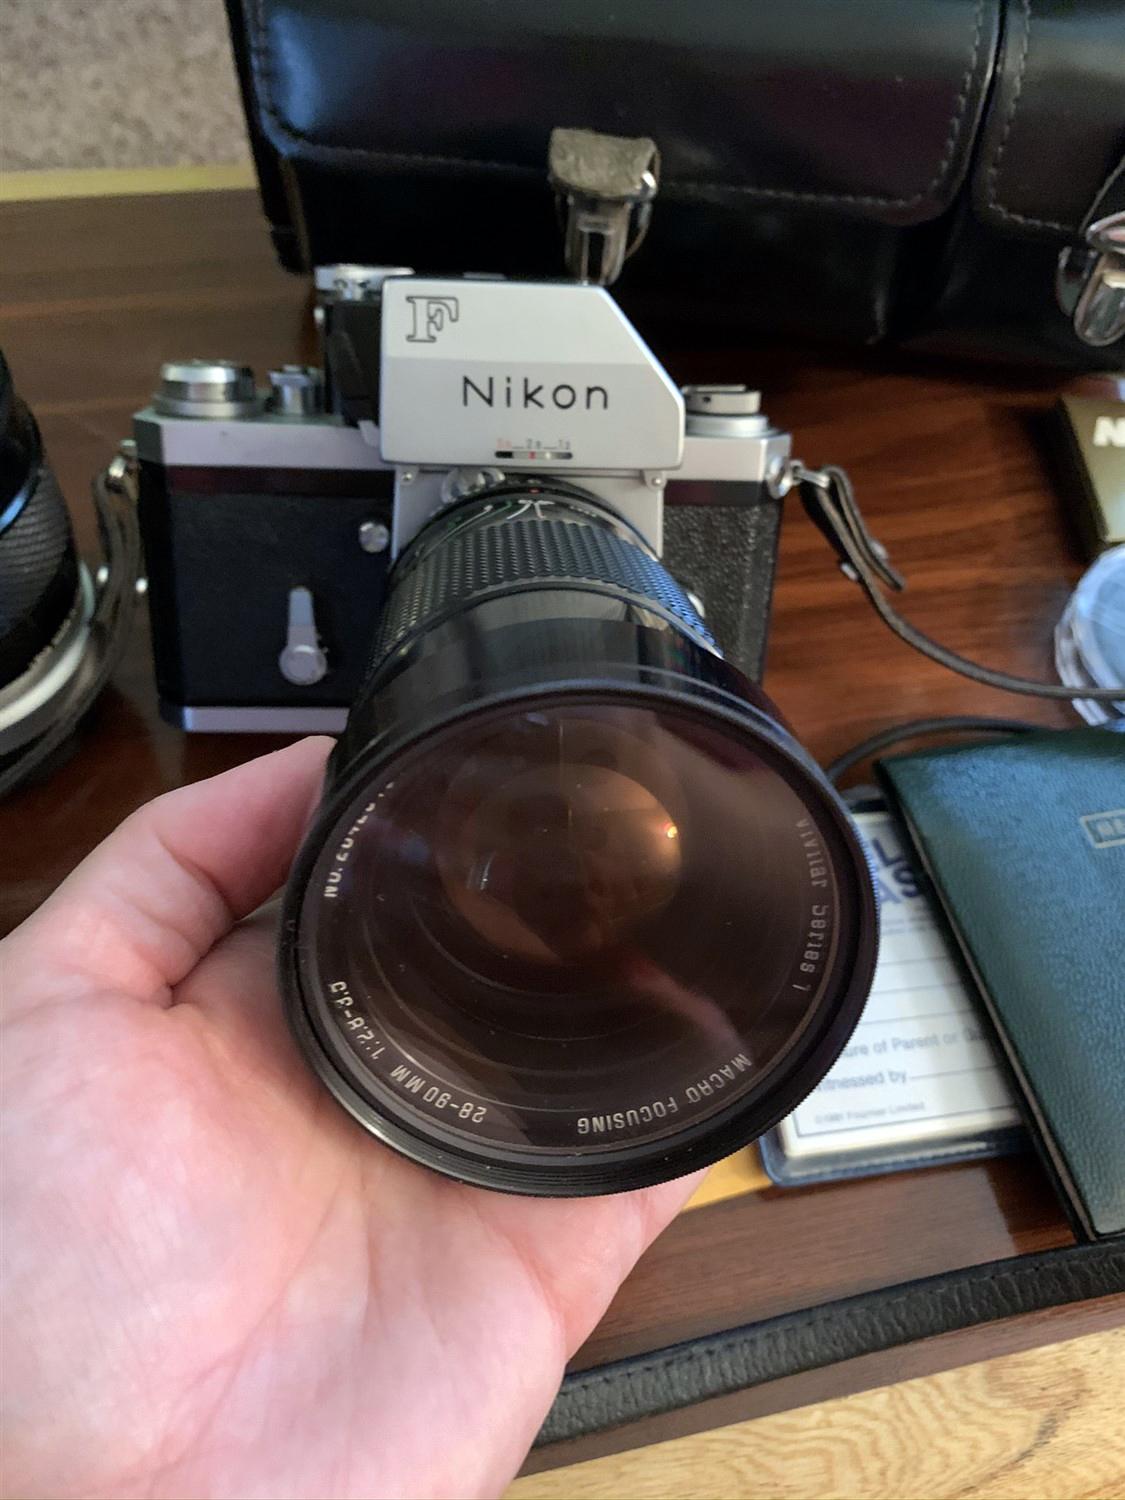 Nikon F camera, Case, 3 Lenes and accessories